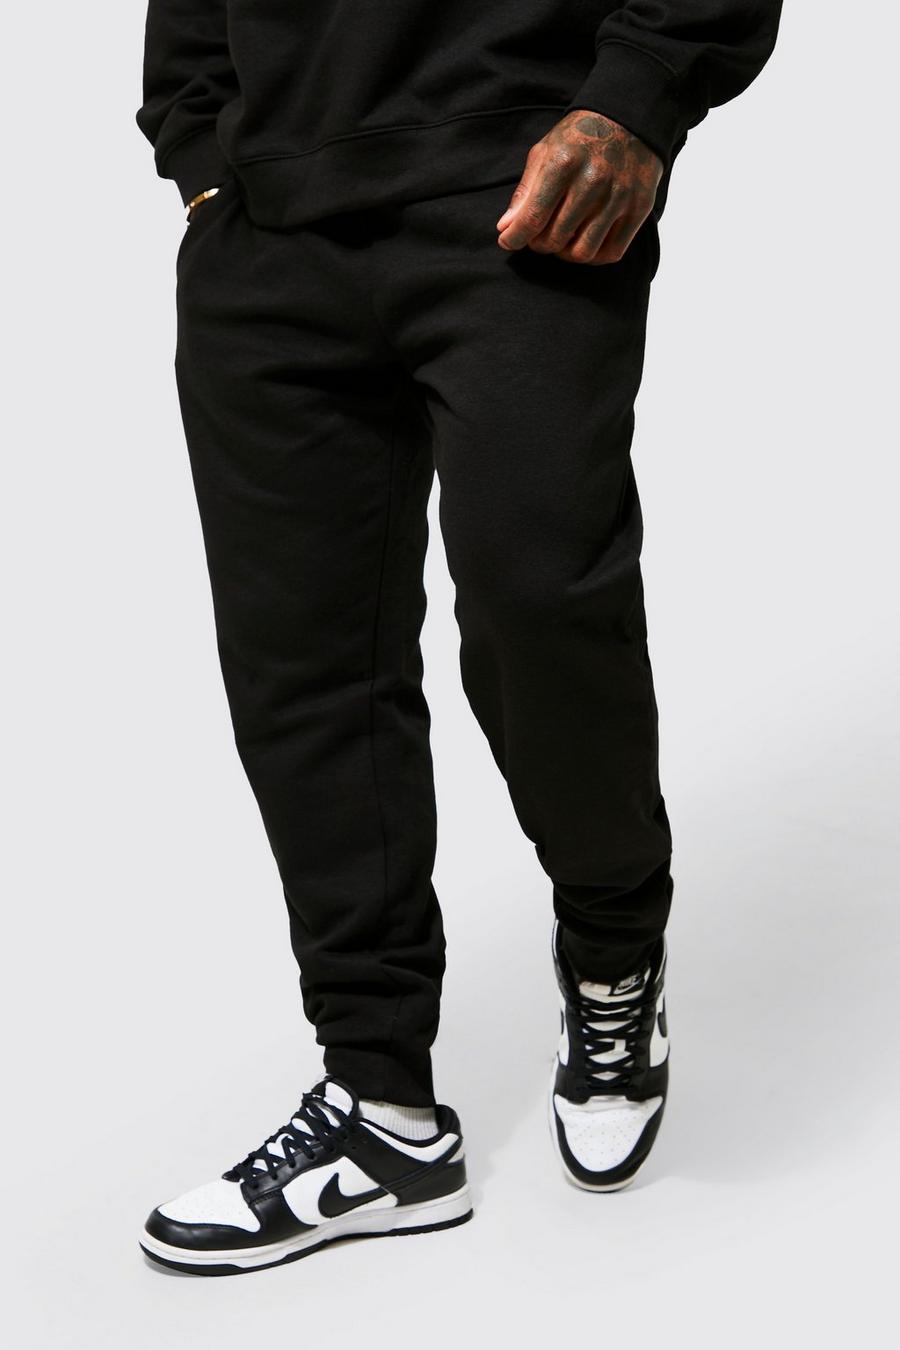 Pantalón deportivo ligero ajustado, Black nero